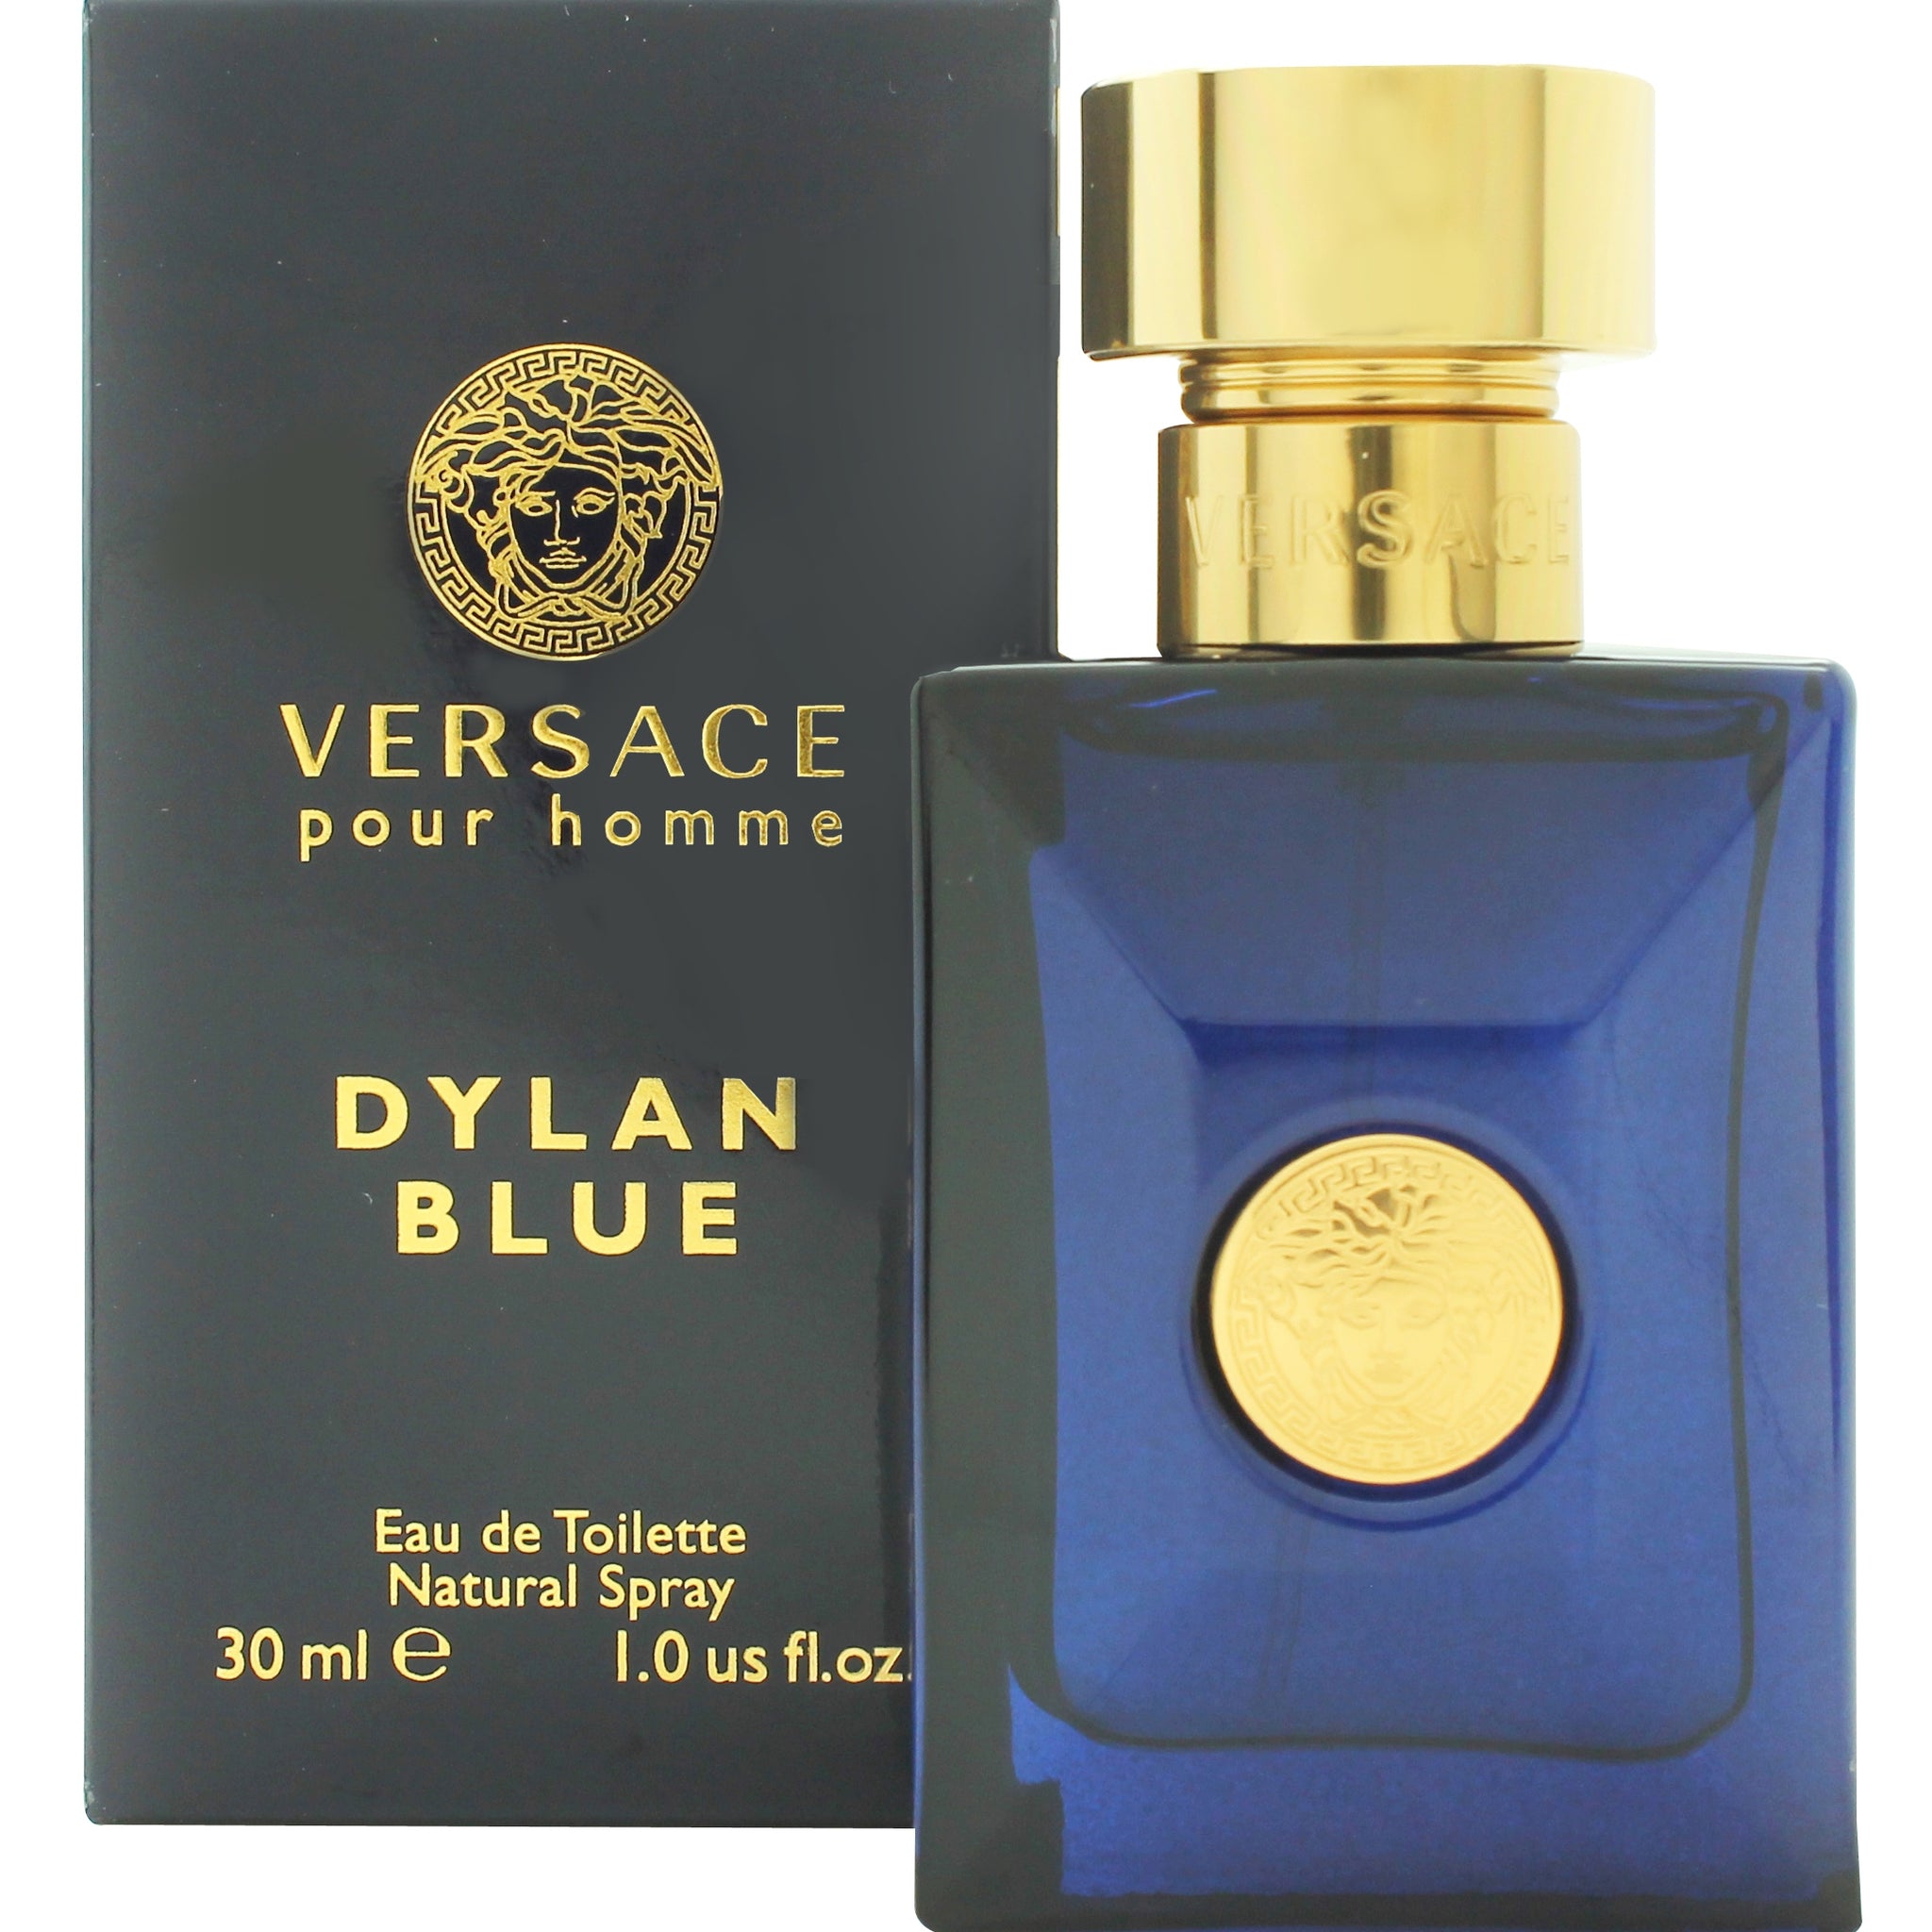 Versace Pour Homme Dylan Blue Eau de Toilette 30ml Spray